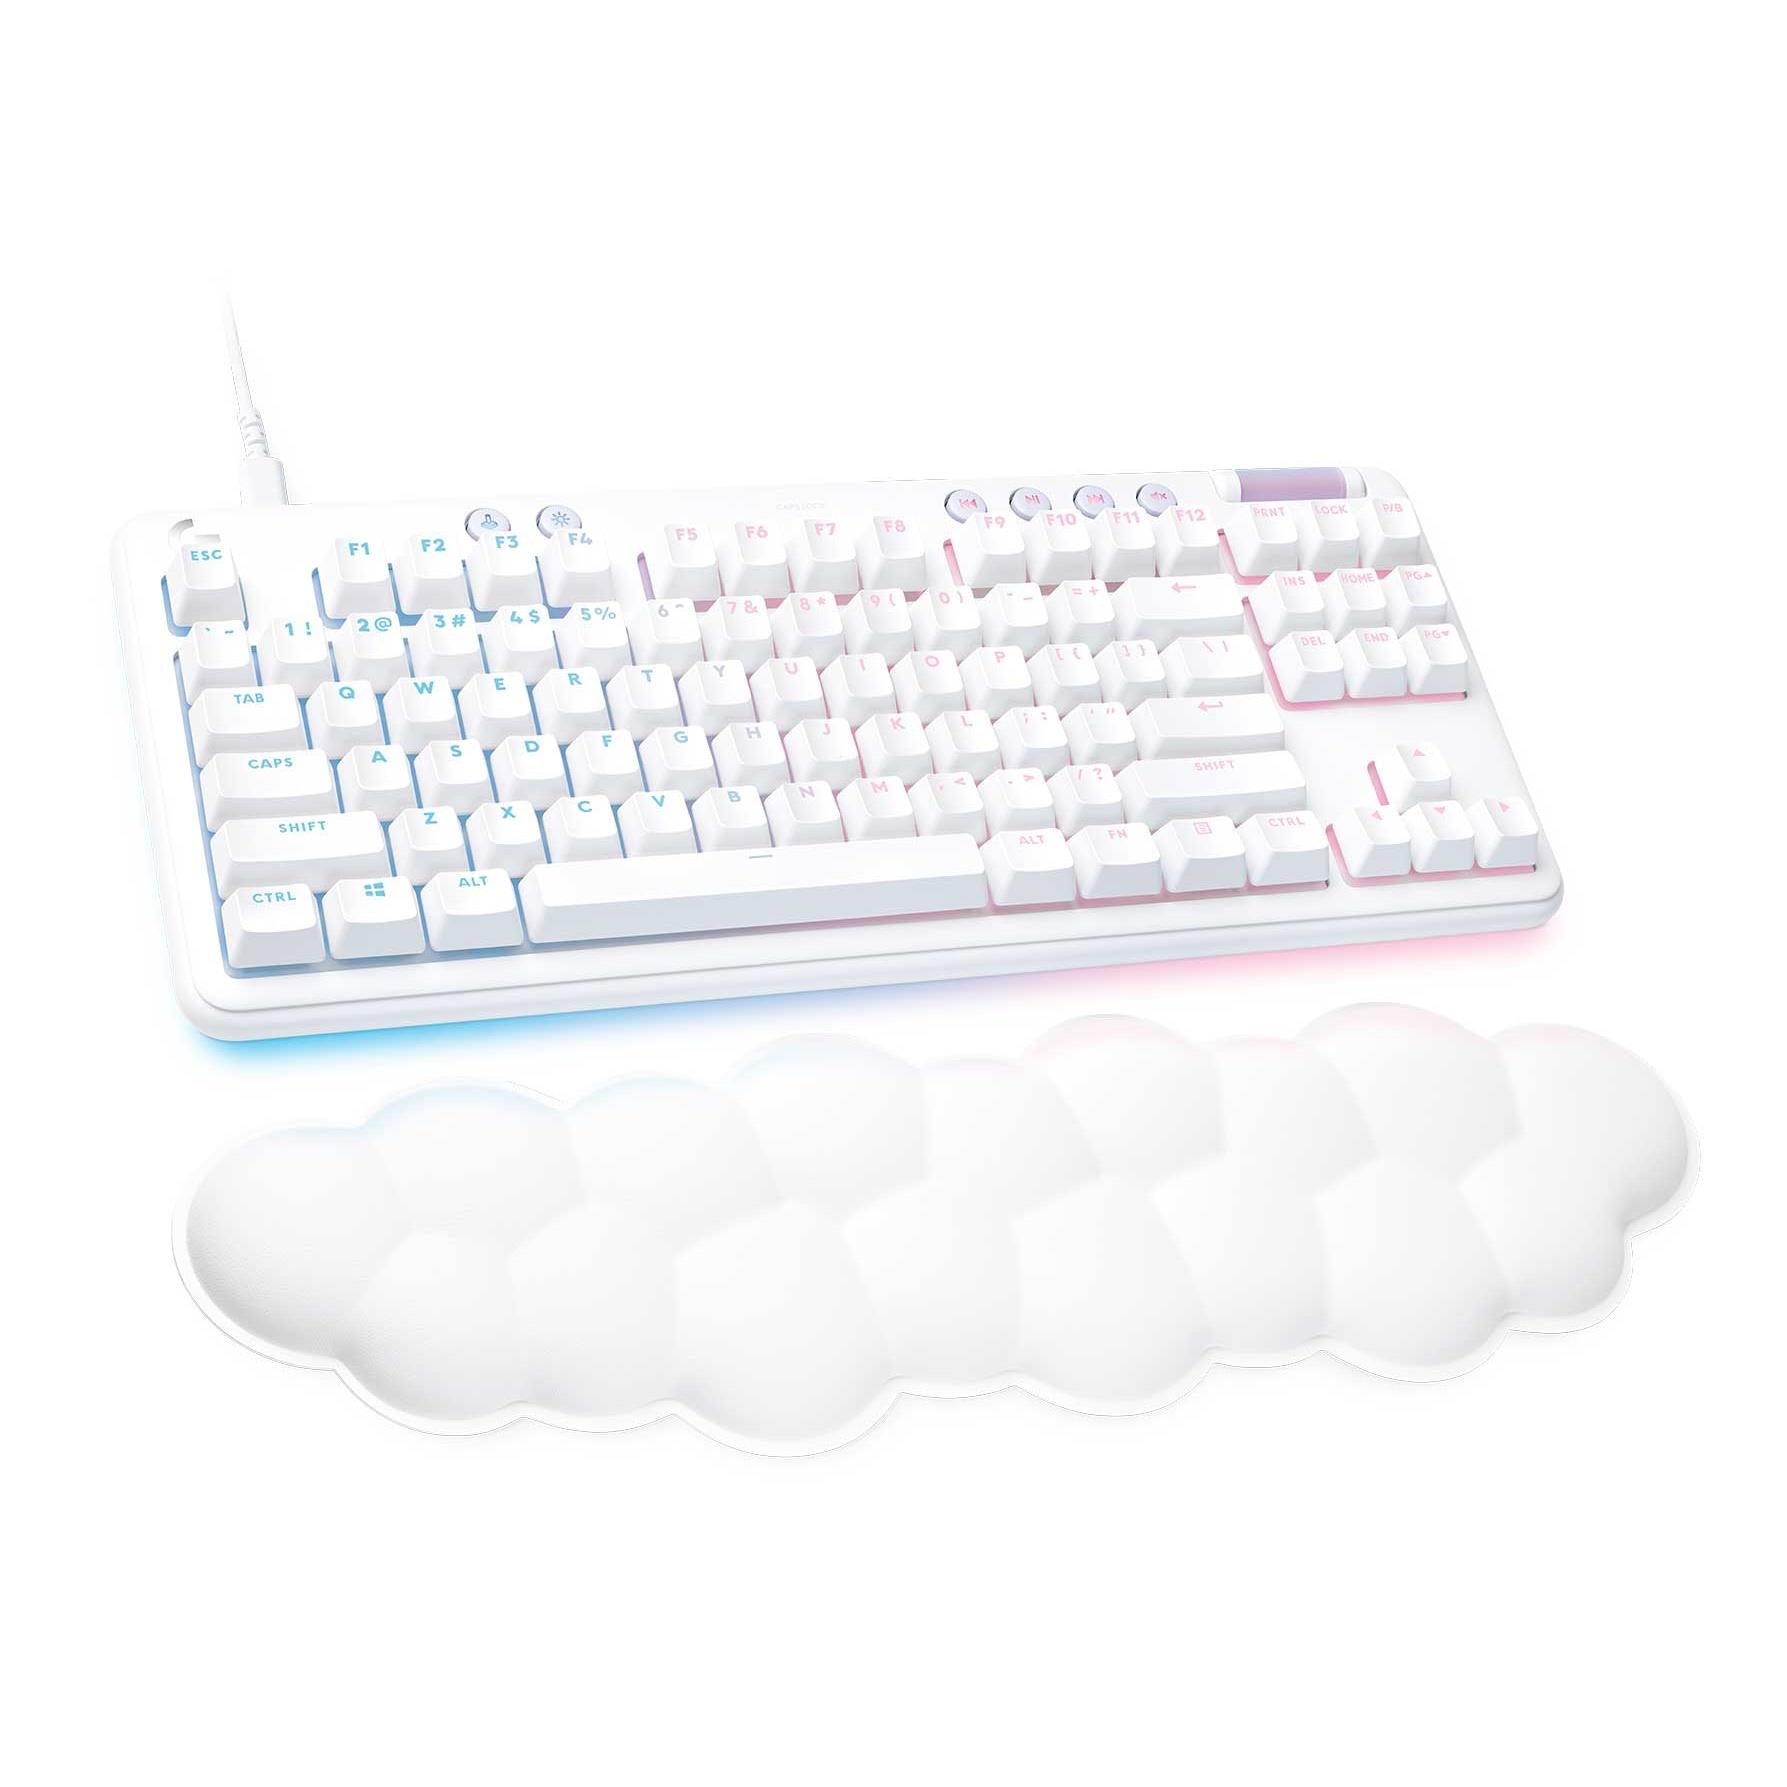 Logitech G713 Gaming Keyboard (White) – Hugarn